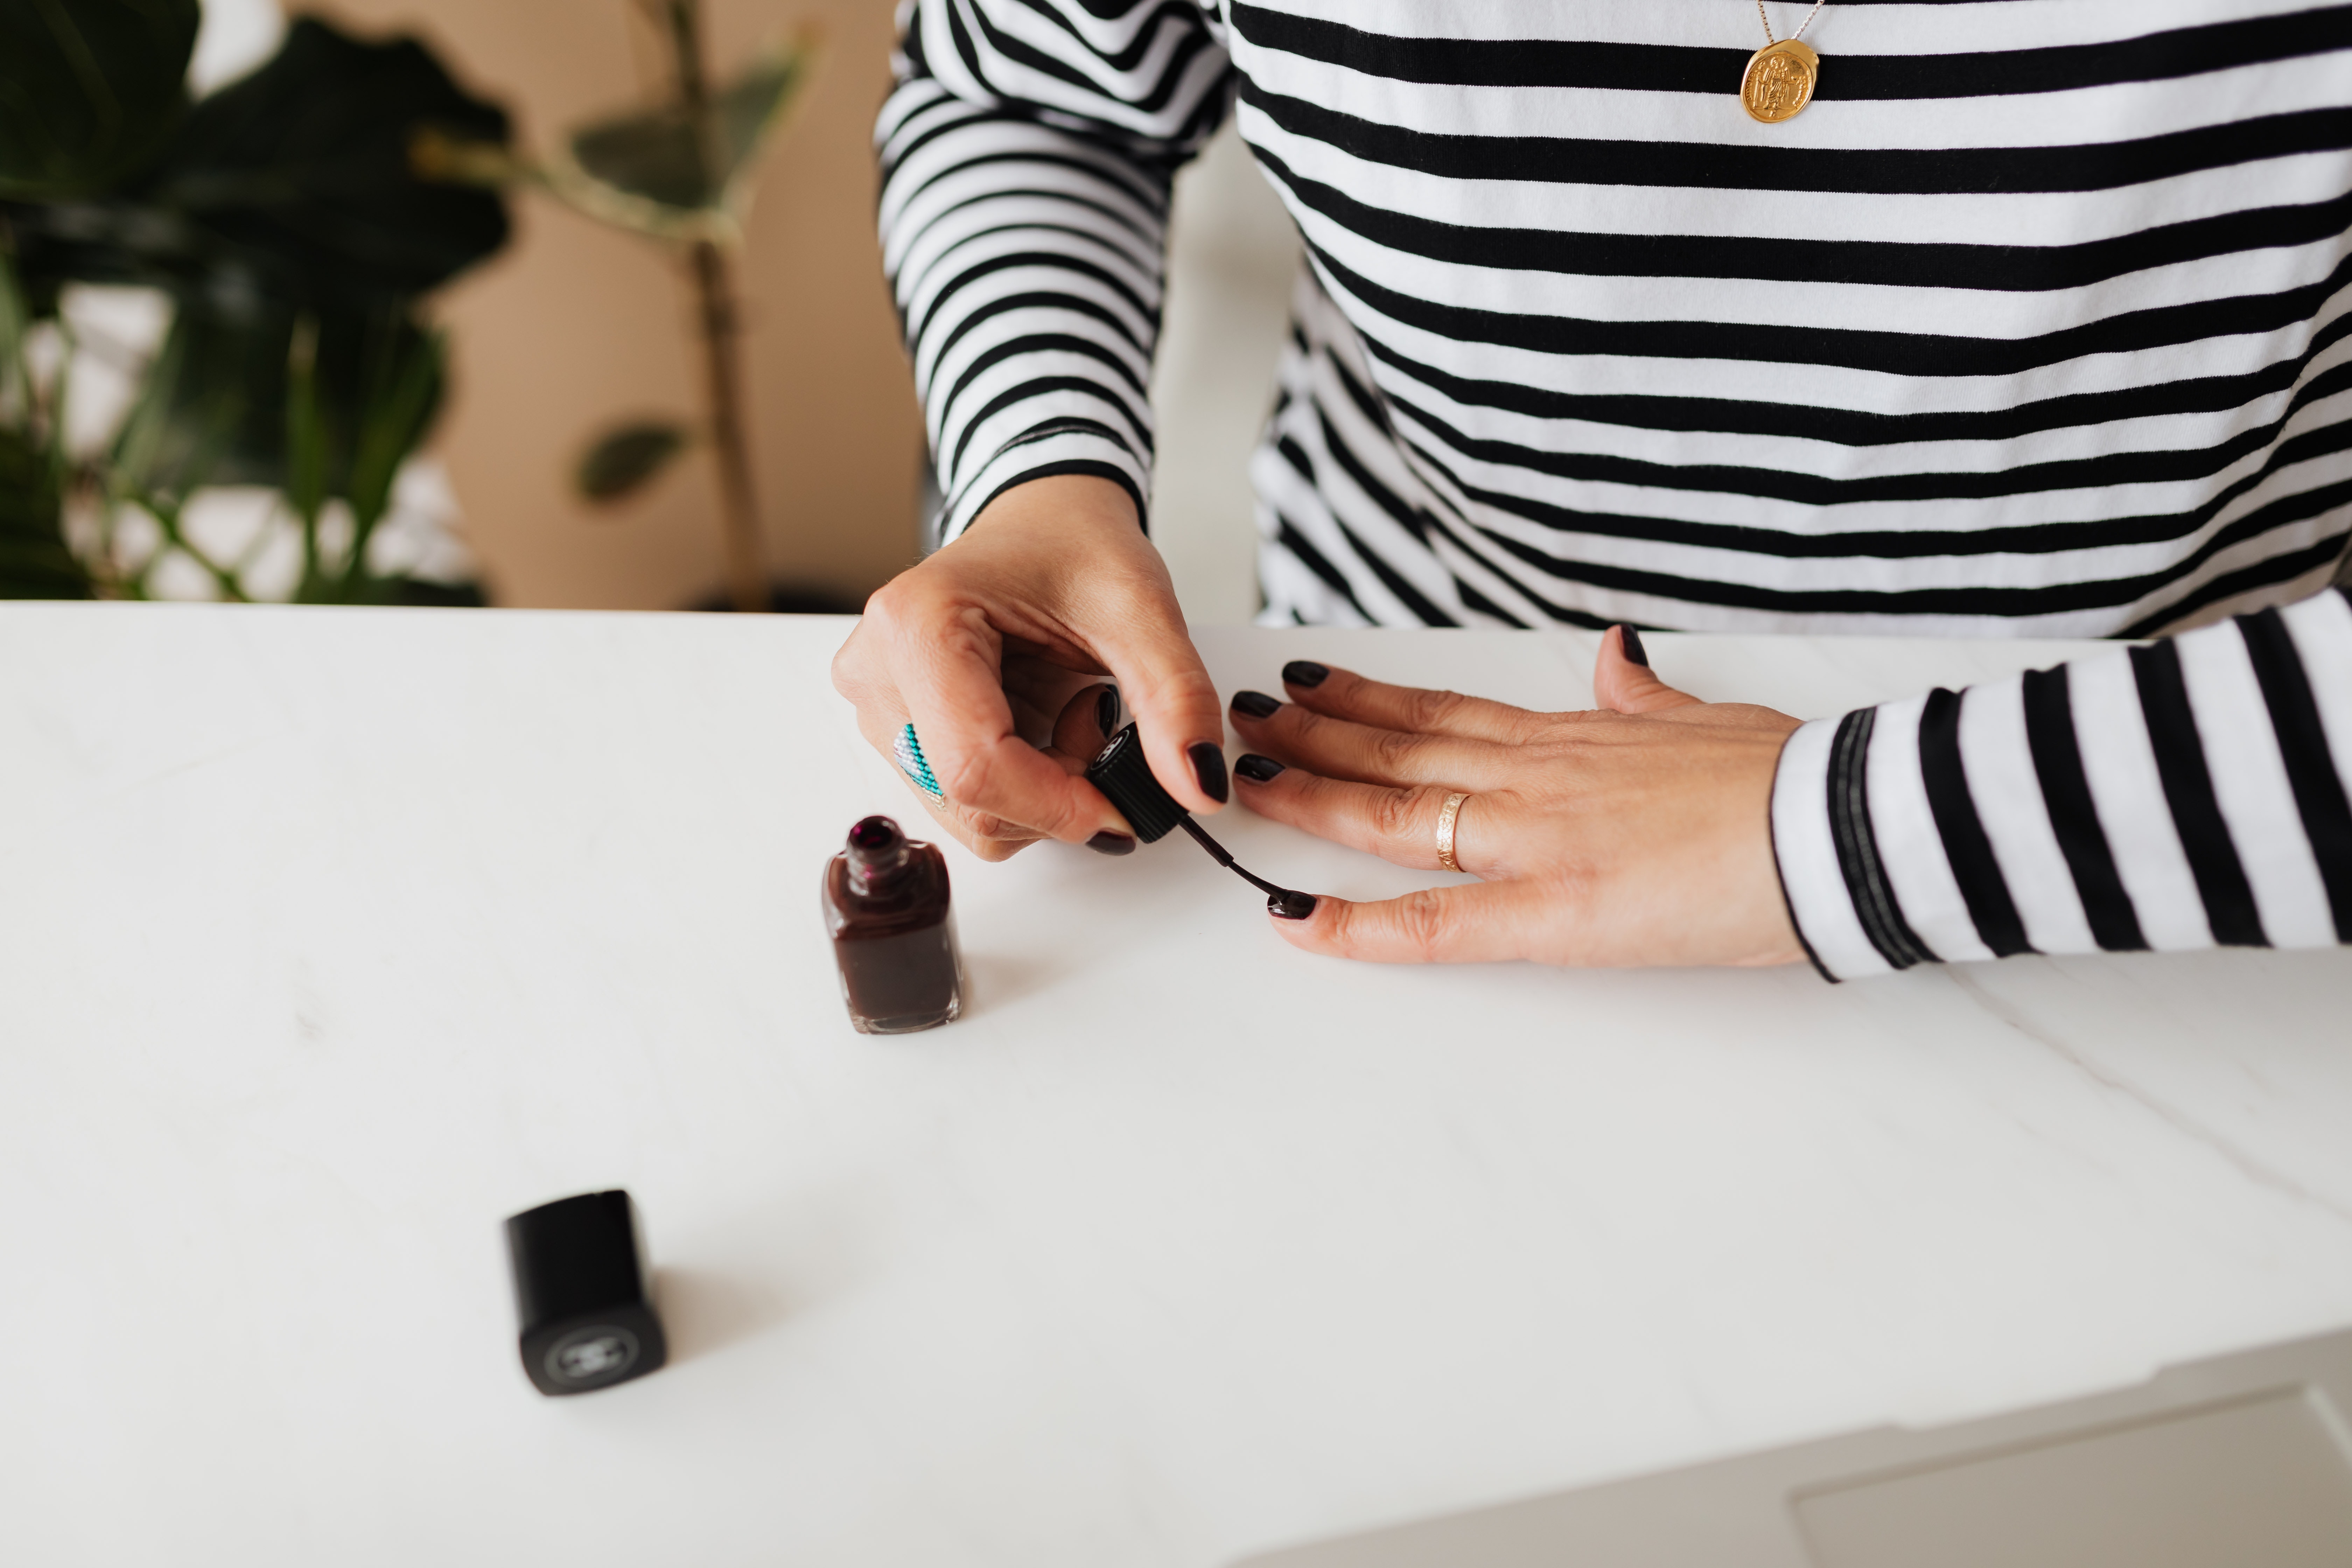 A photo of a woman applying nail polish | Source: Pexels